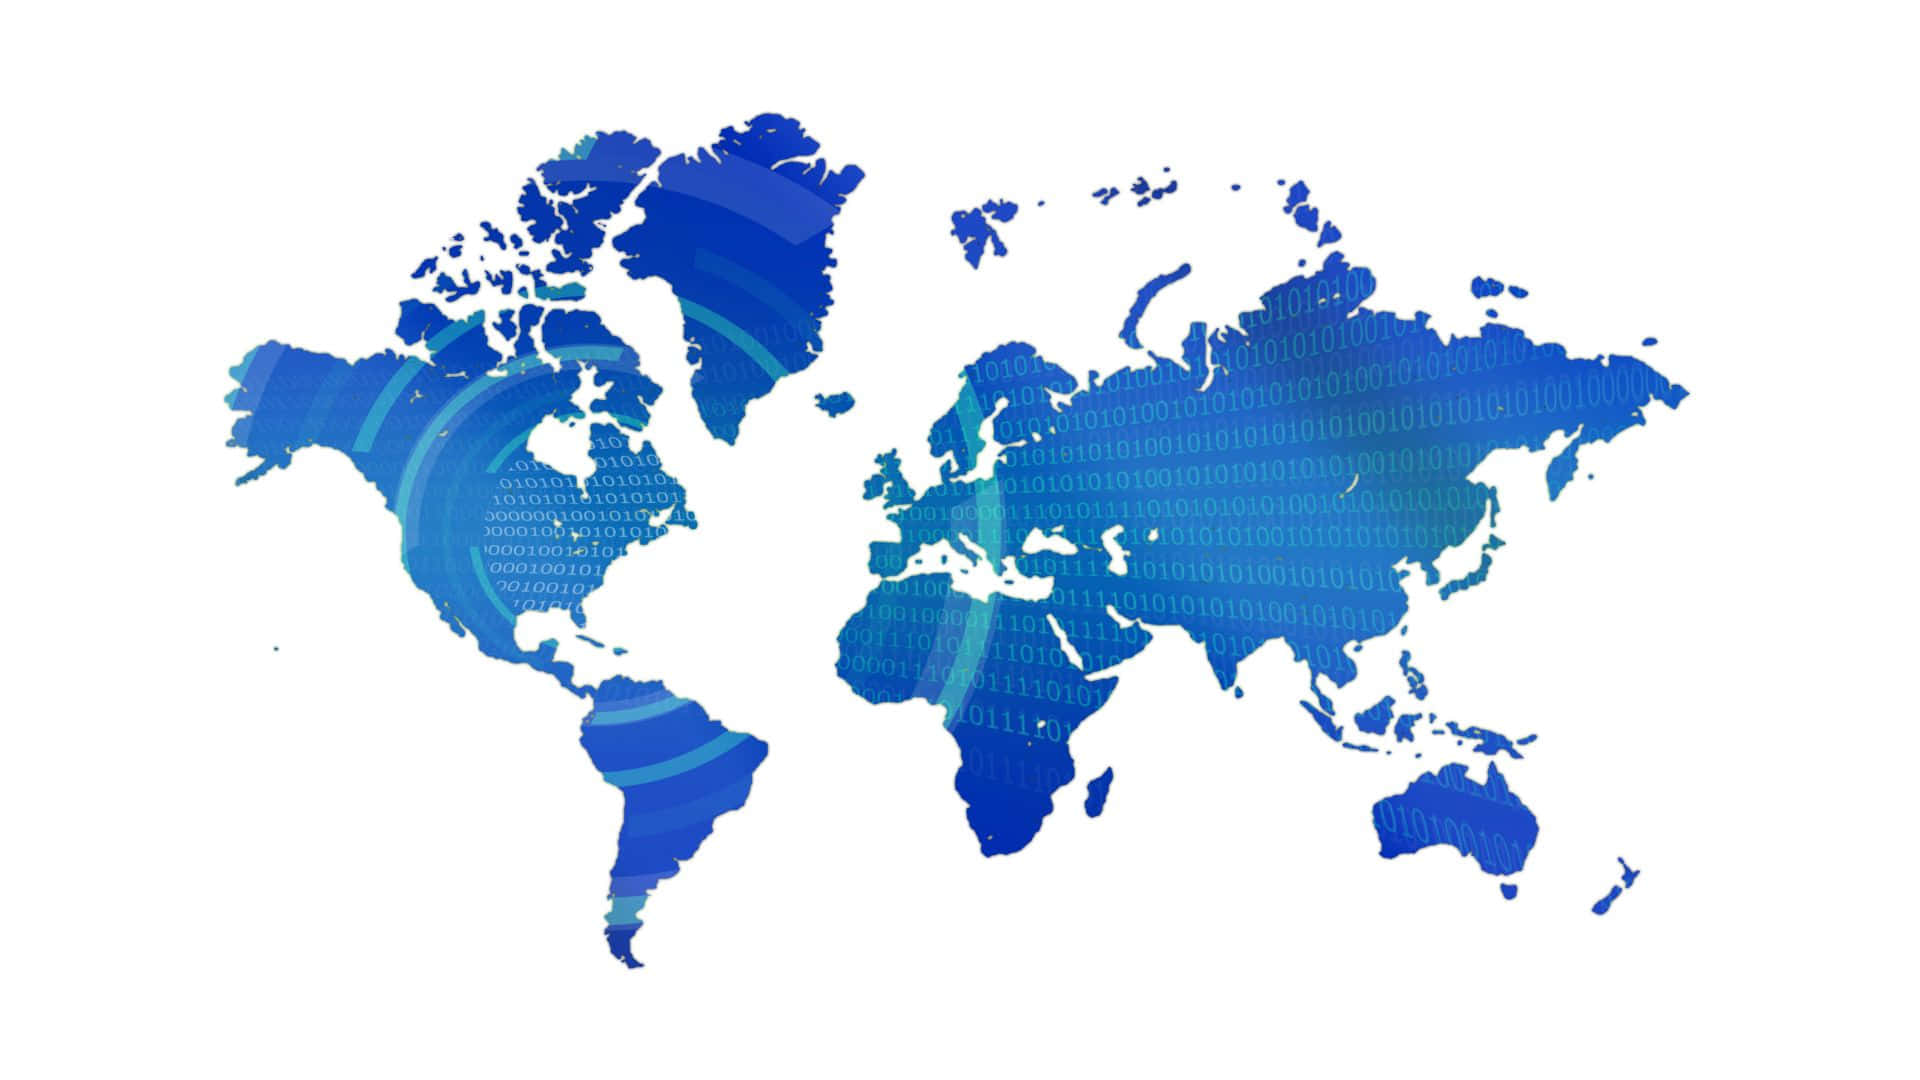 Sfondocon Silhouette Di Mappa Mondiale In Blu Molto Cool.